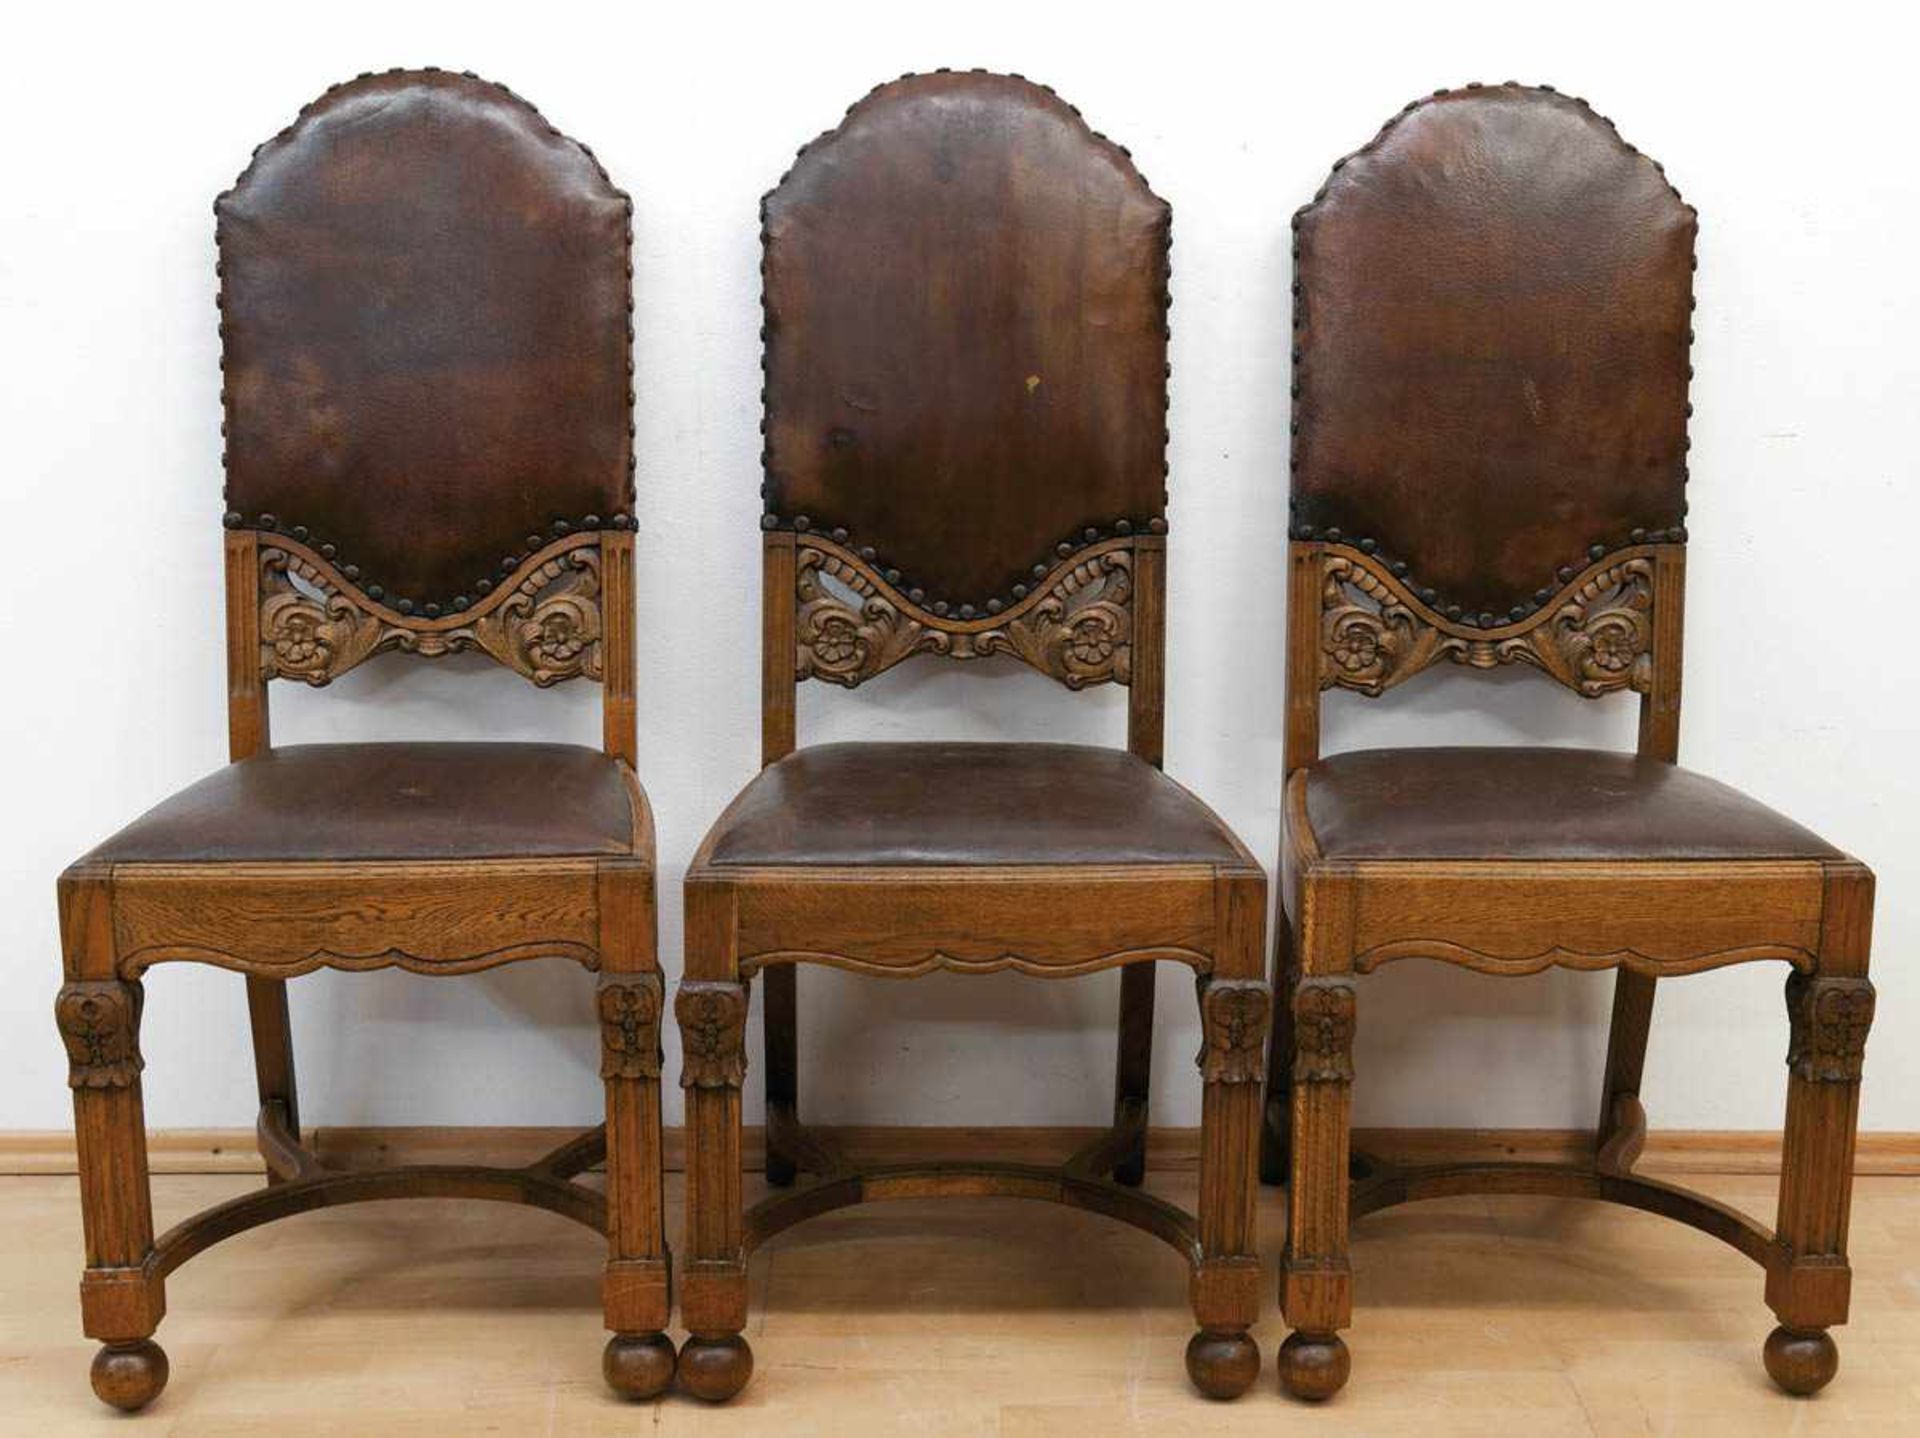 Satz von 3 Stühlen, um 1900, Eiche, beschnitzt, gepolsterter Sitz und Rückenlehne mitbraunem